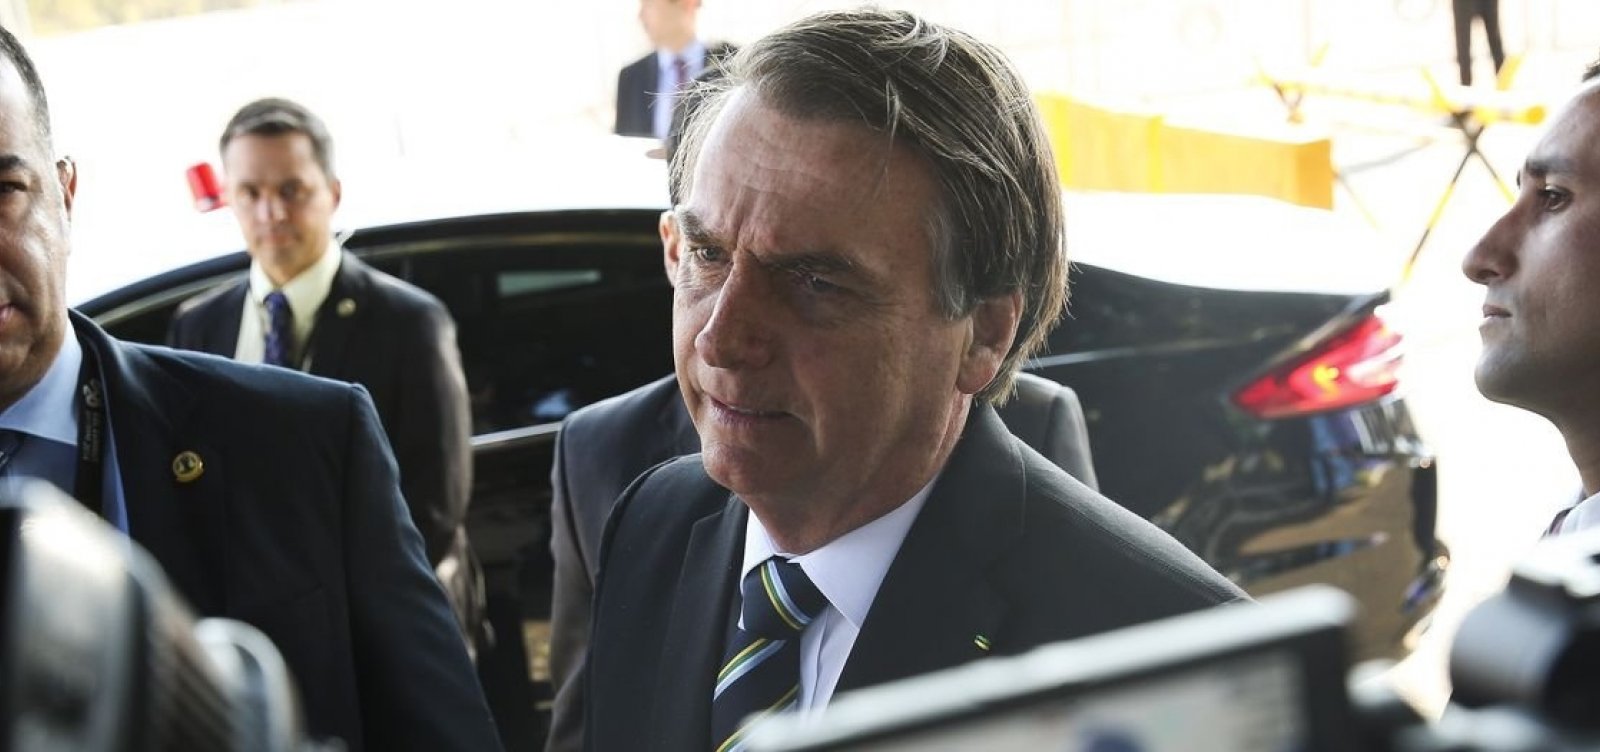 'Não tô vendo nenhum magro aqui', diz Bolsonaro após declaração sobre fome